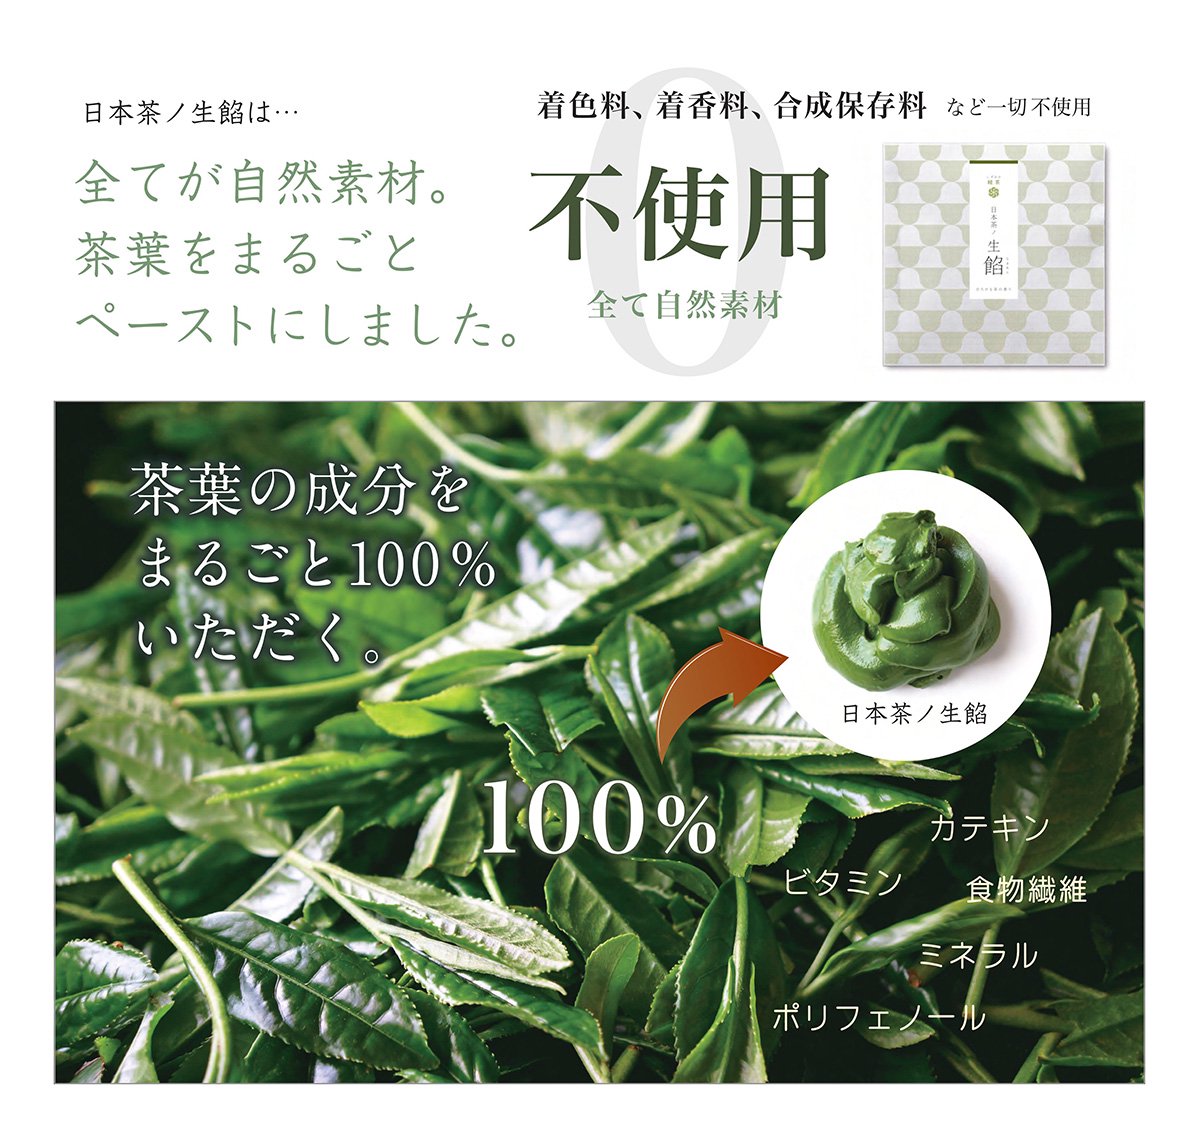 「お茶のペースト」日本茶ノ生餡の特徴、お茶の栄養をまるごと！おいしい日本茶研究所。